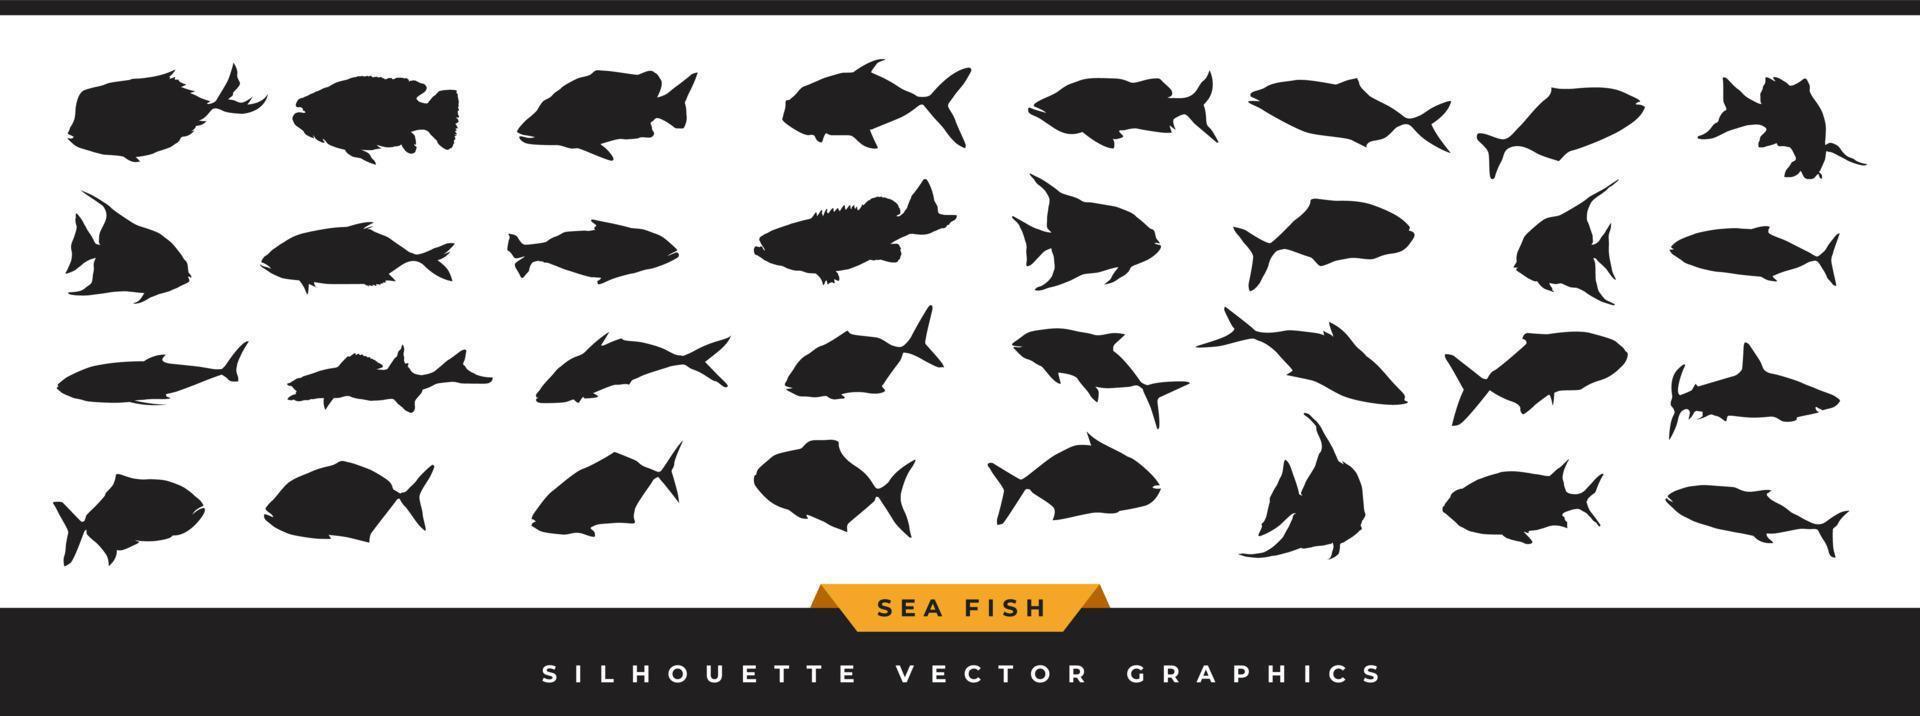 sagoma di pesce di mare. collezione di silhouette di pesci oceanici. set di icone vettoriali di animali marini disegnati a mano sono illustrati in diverse pose isolate su sfondo bianco.